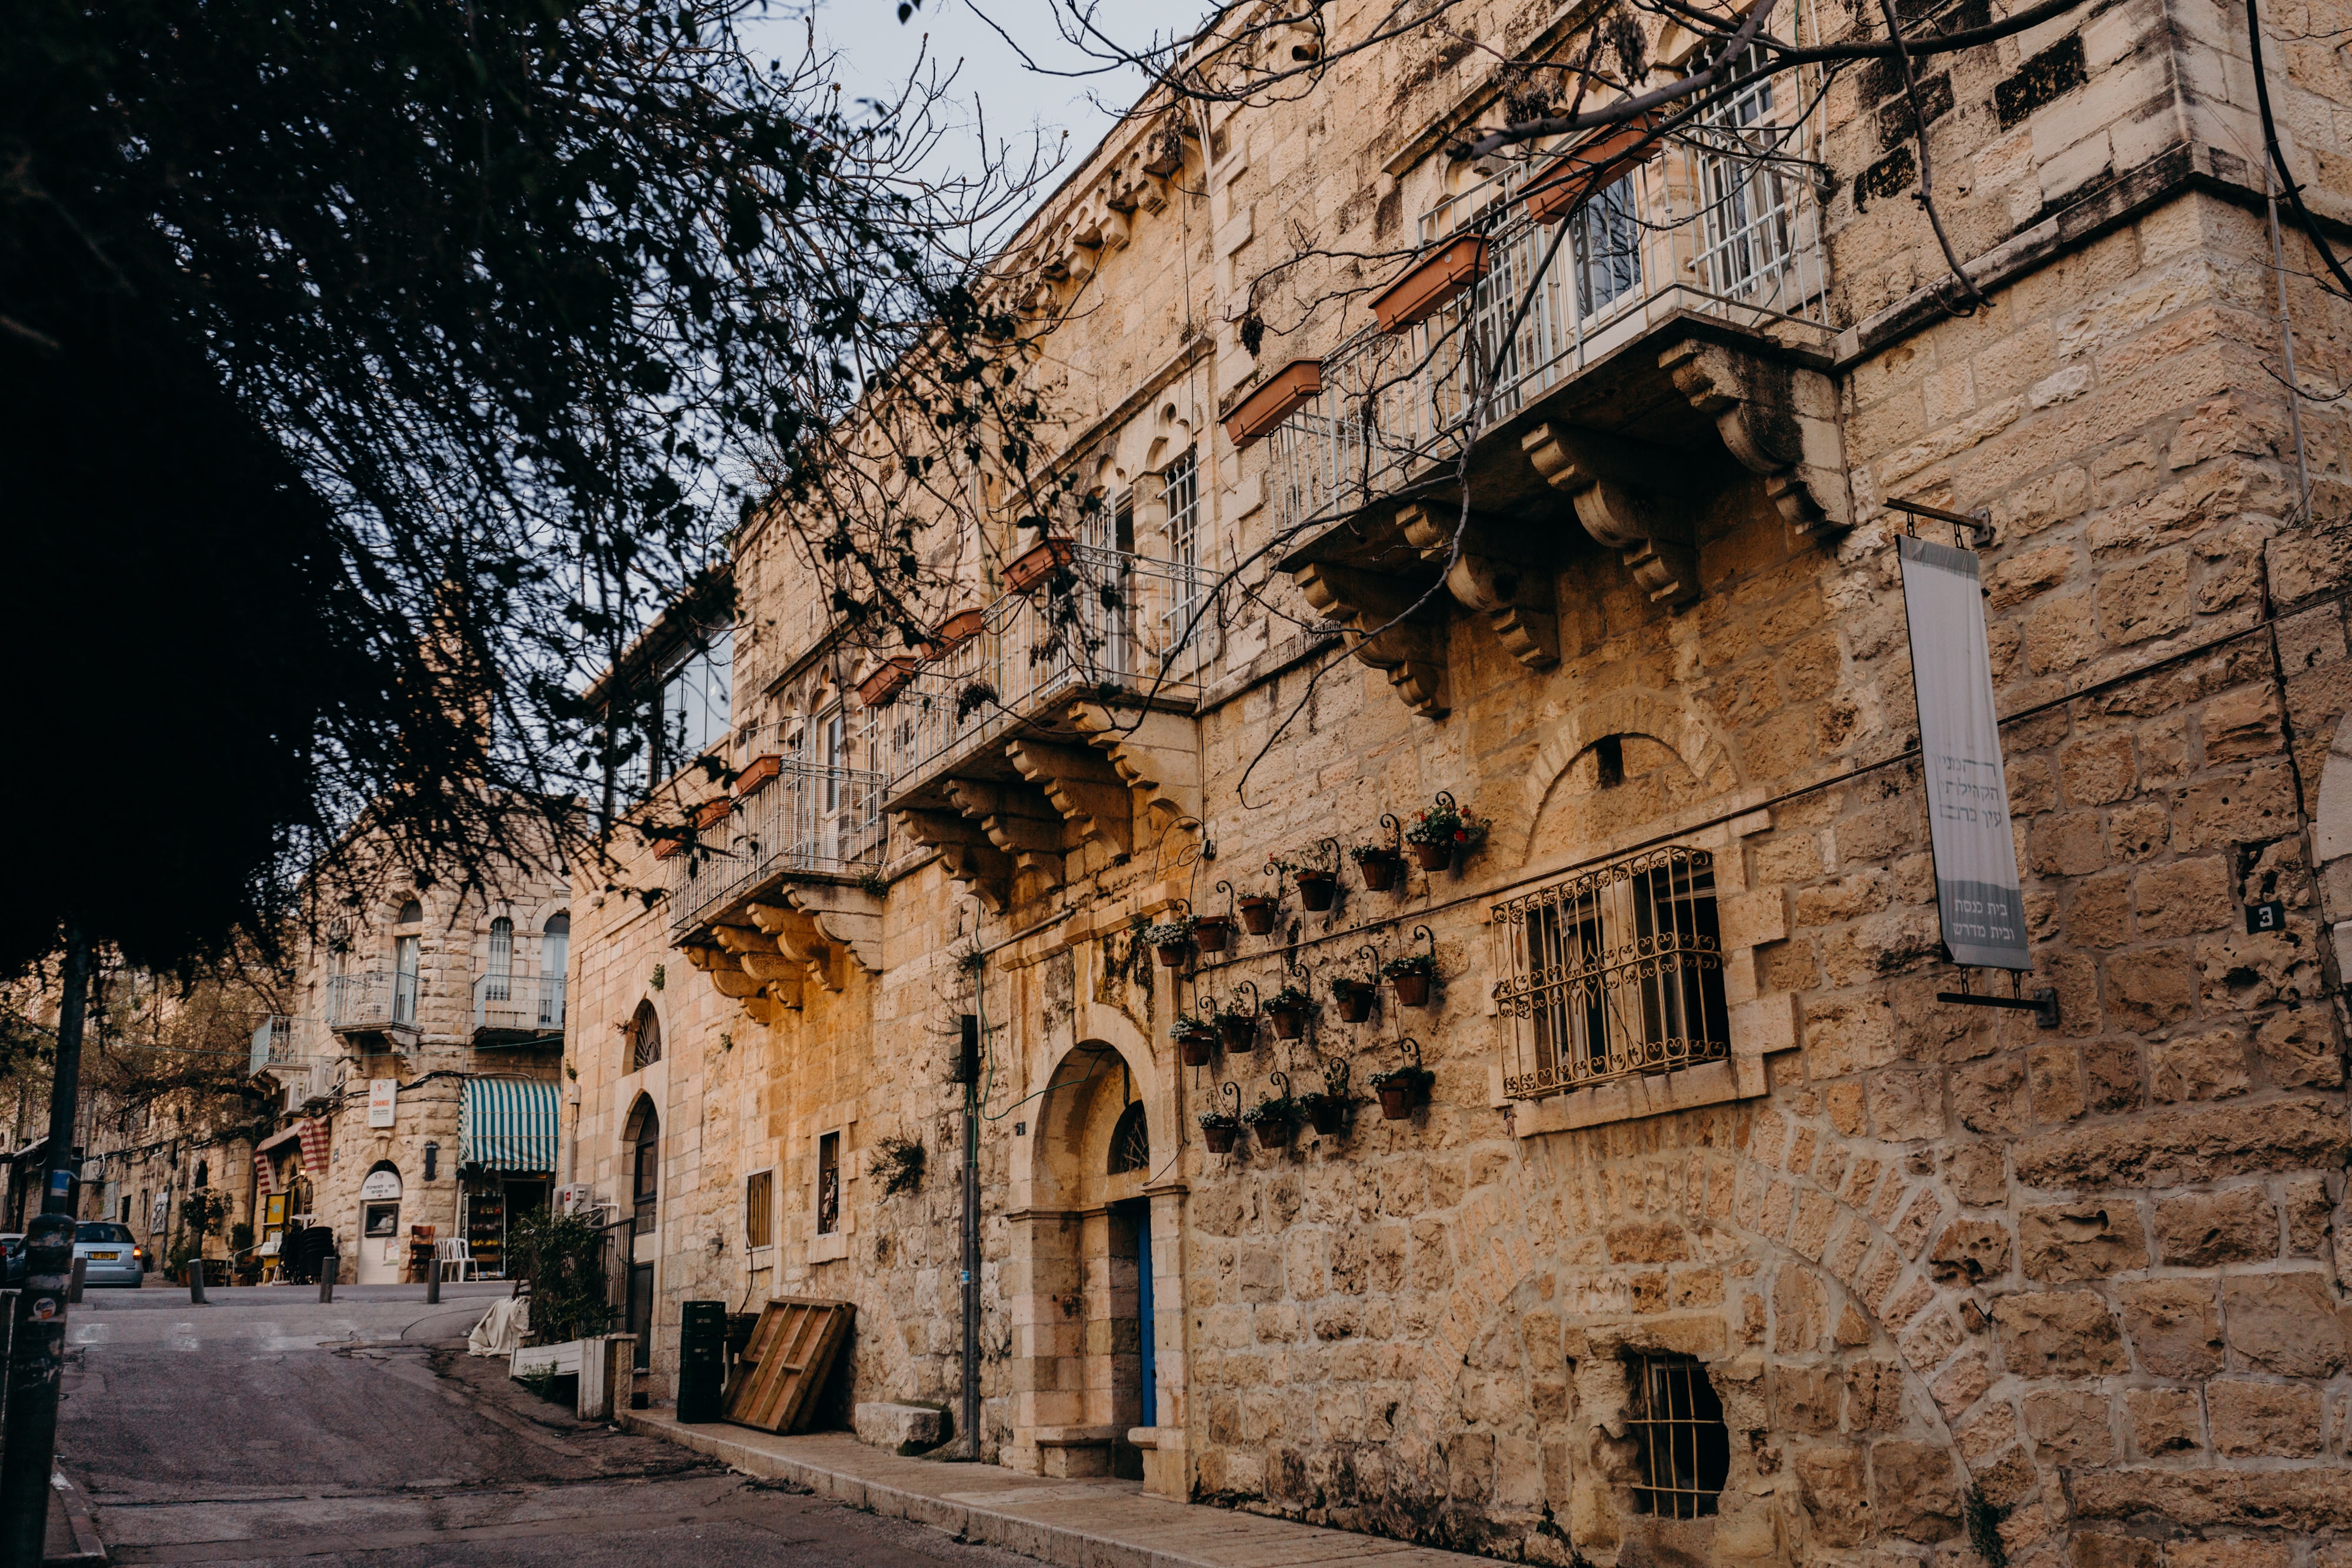 The historical streets of Ein Karem, Jerusalem, Israel